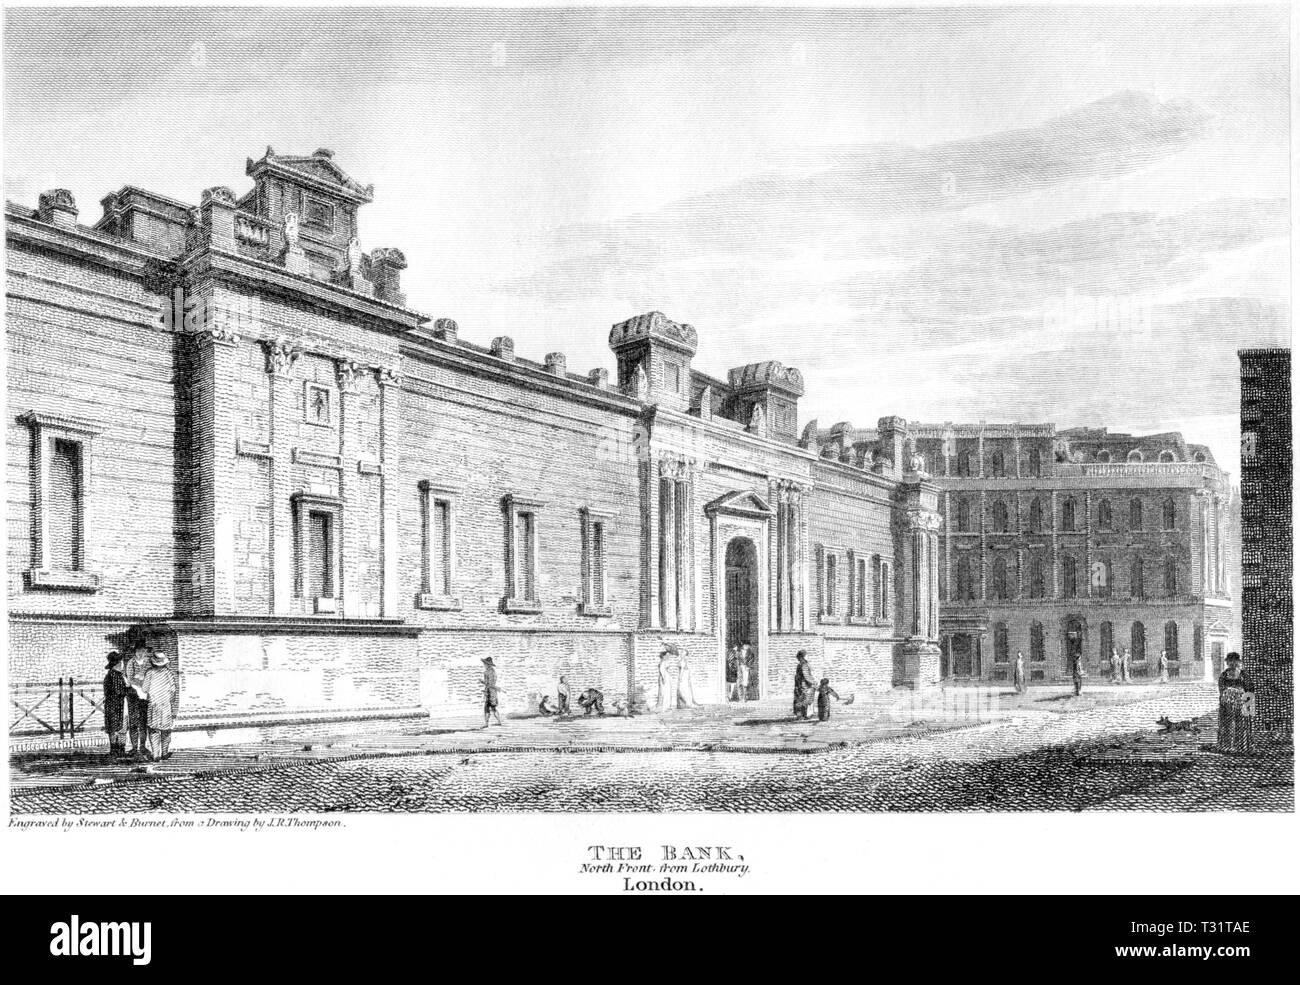 Une gravure de la Banque, au nord de Londres, Lothbury Avant UK numérisées à haute résolution à partir d'un livre publié en 1814. Croyait libres de droit. Banque D'Images